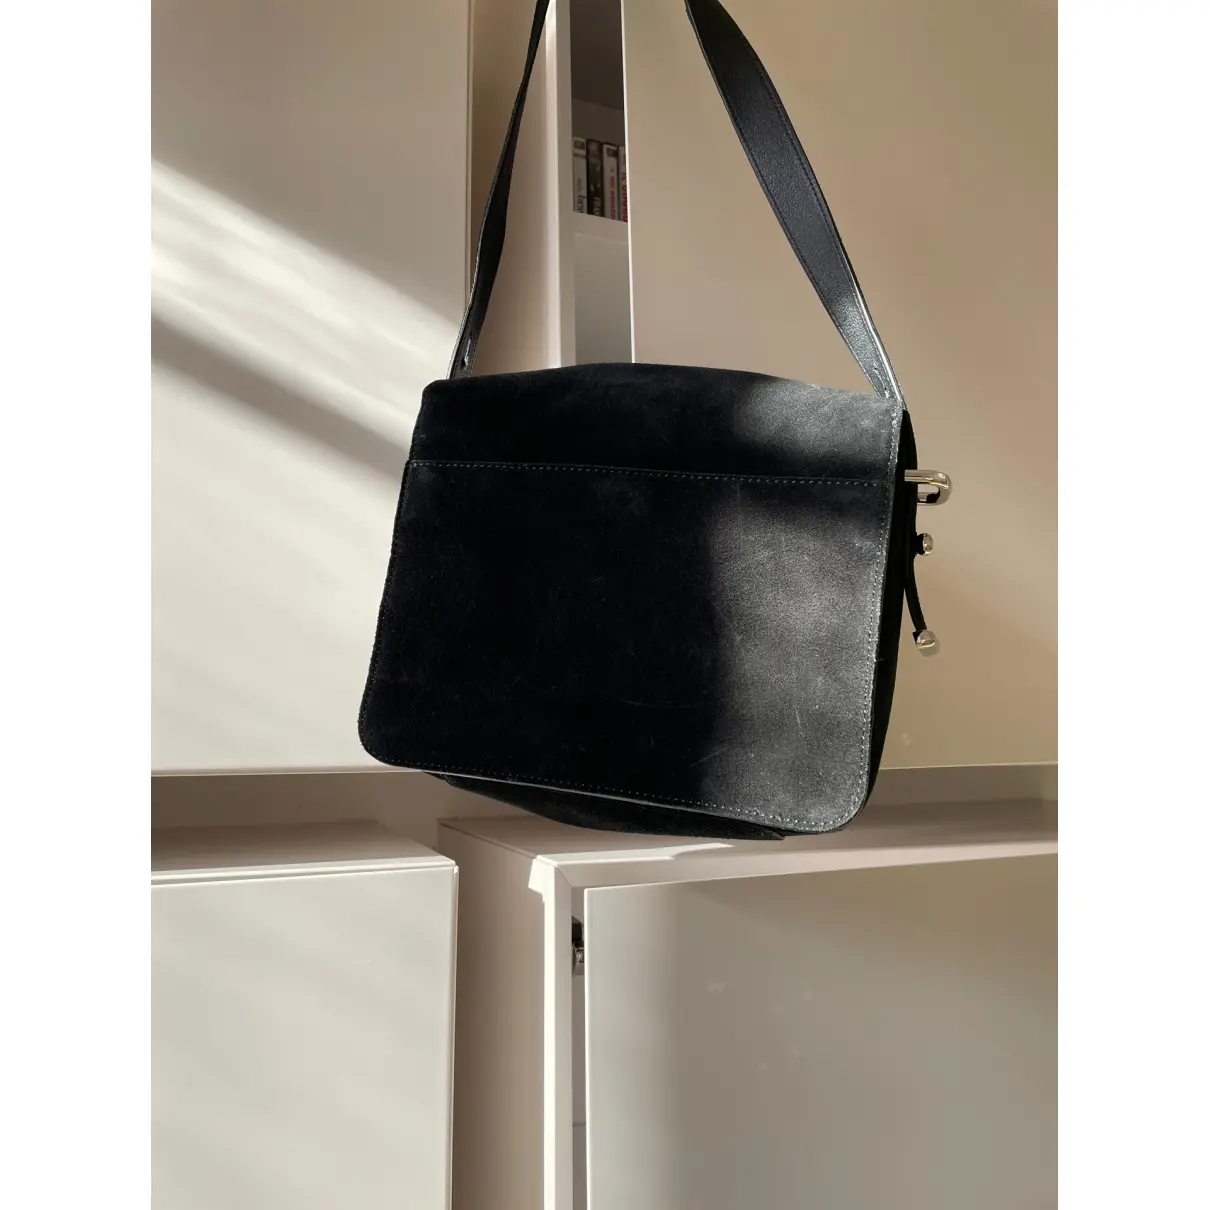 Buy Kenzo Velvet handbag online